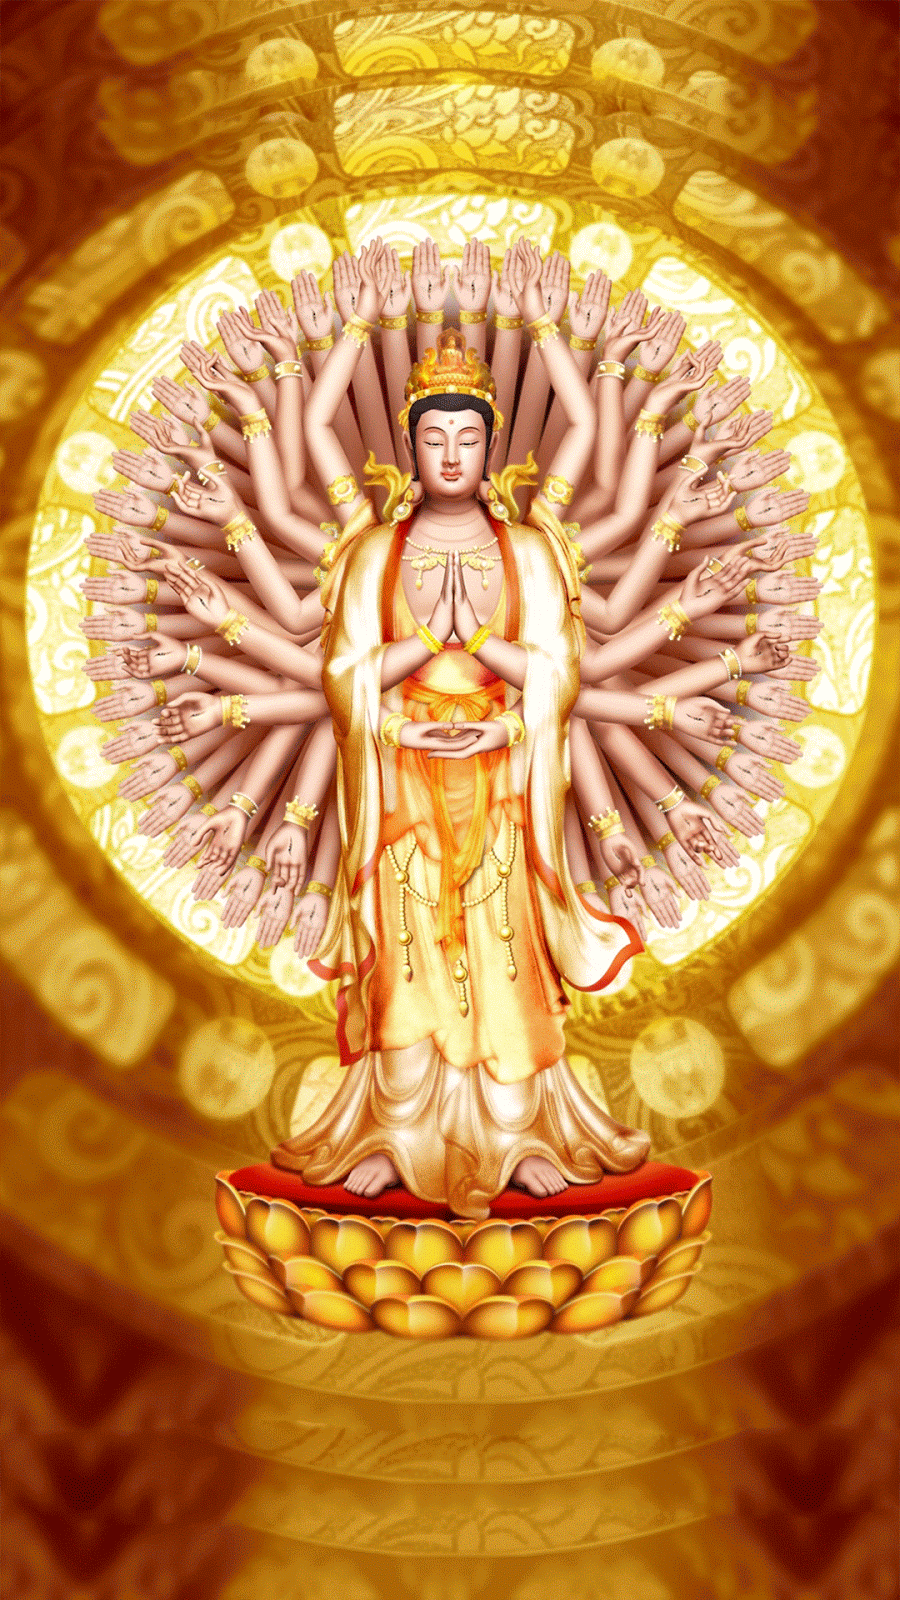 Hãy cùng chiêm ngưỡng hình ảnh đầy tâm linh của Phật, tìm hiểu về giáo pháp đại thừa và tìm nguồn cảm hứng trong cuộc sống.